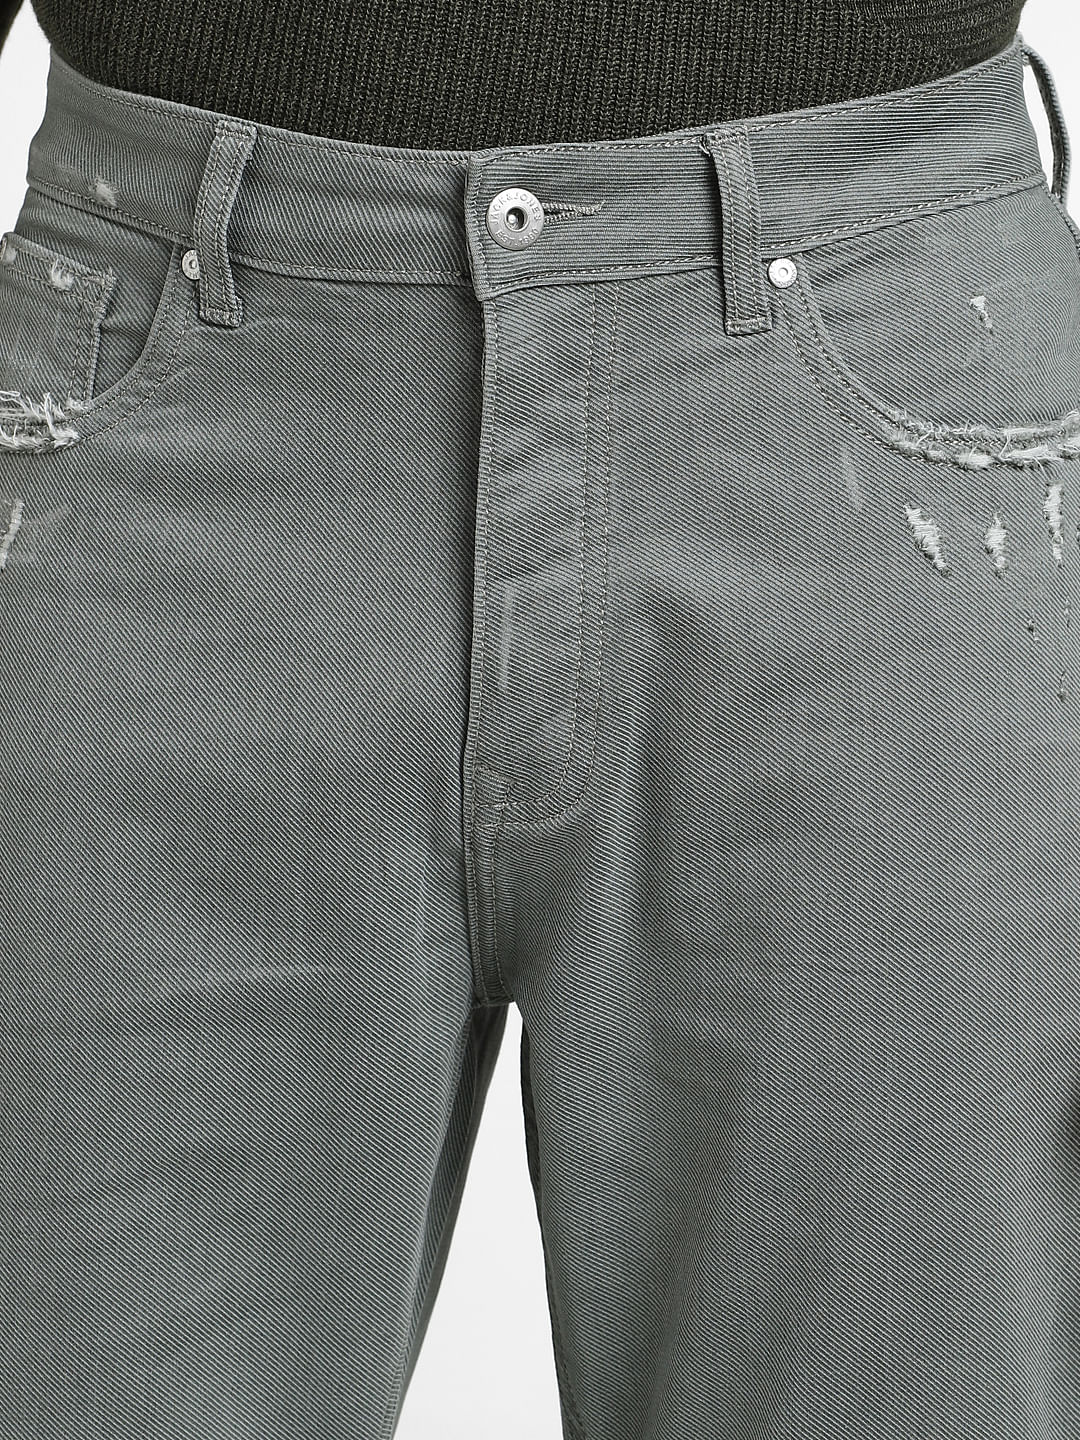 CCS Baggy Taper Denim Jeans - RL Acid Green